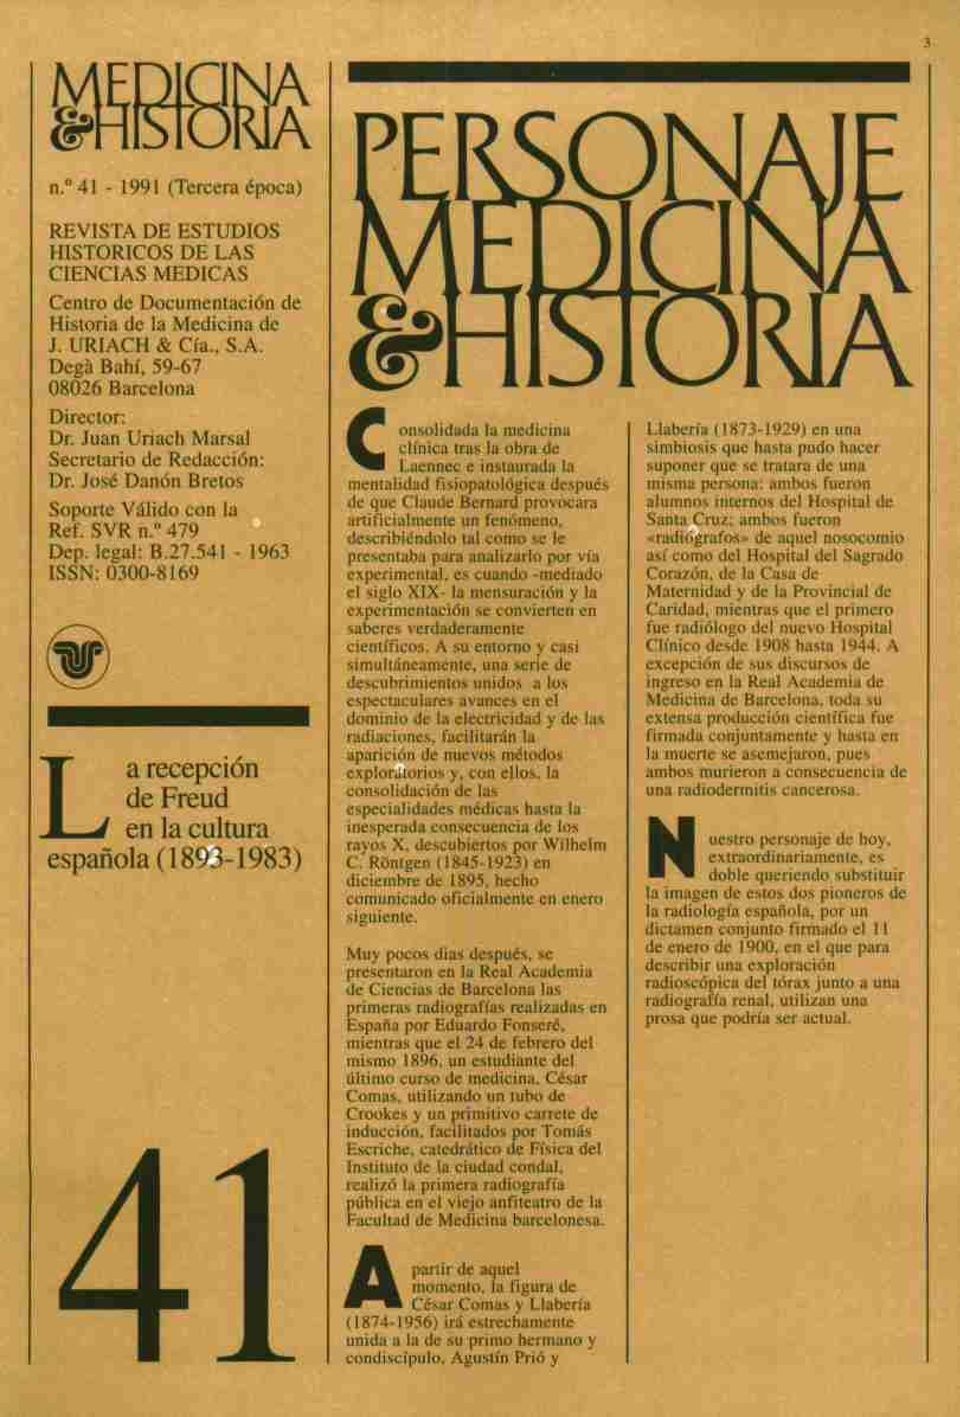 URIACH &Cía., S.A. M0^\ ^ V I J l\ A A Degá Bahí, 59-67 \ *) J V J I VI / \ m 08026 Barcelona ^*S A*^^ * ^ - ^ A M* m. Dr Tmn Ilriarh Marsal ^i imsolidada la medicina Llabería (1873-1929) en una ur.